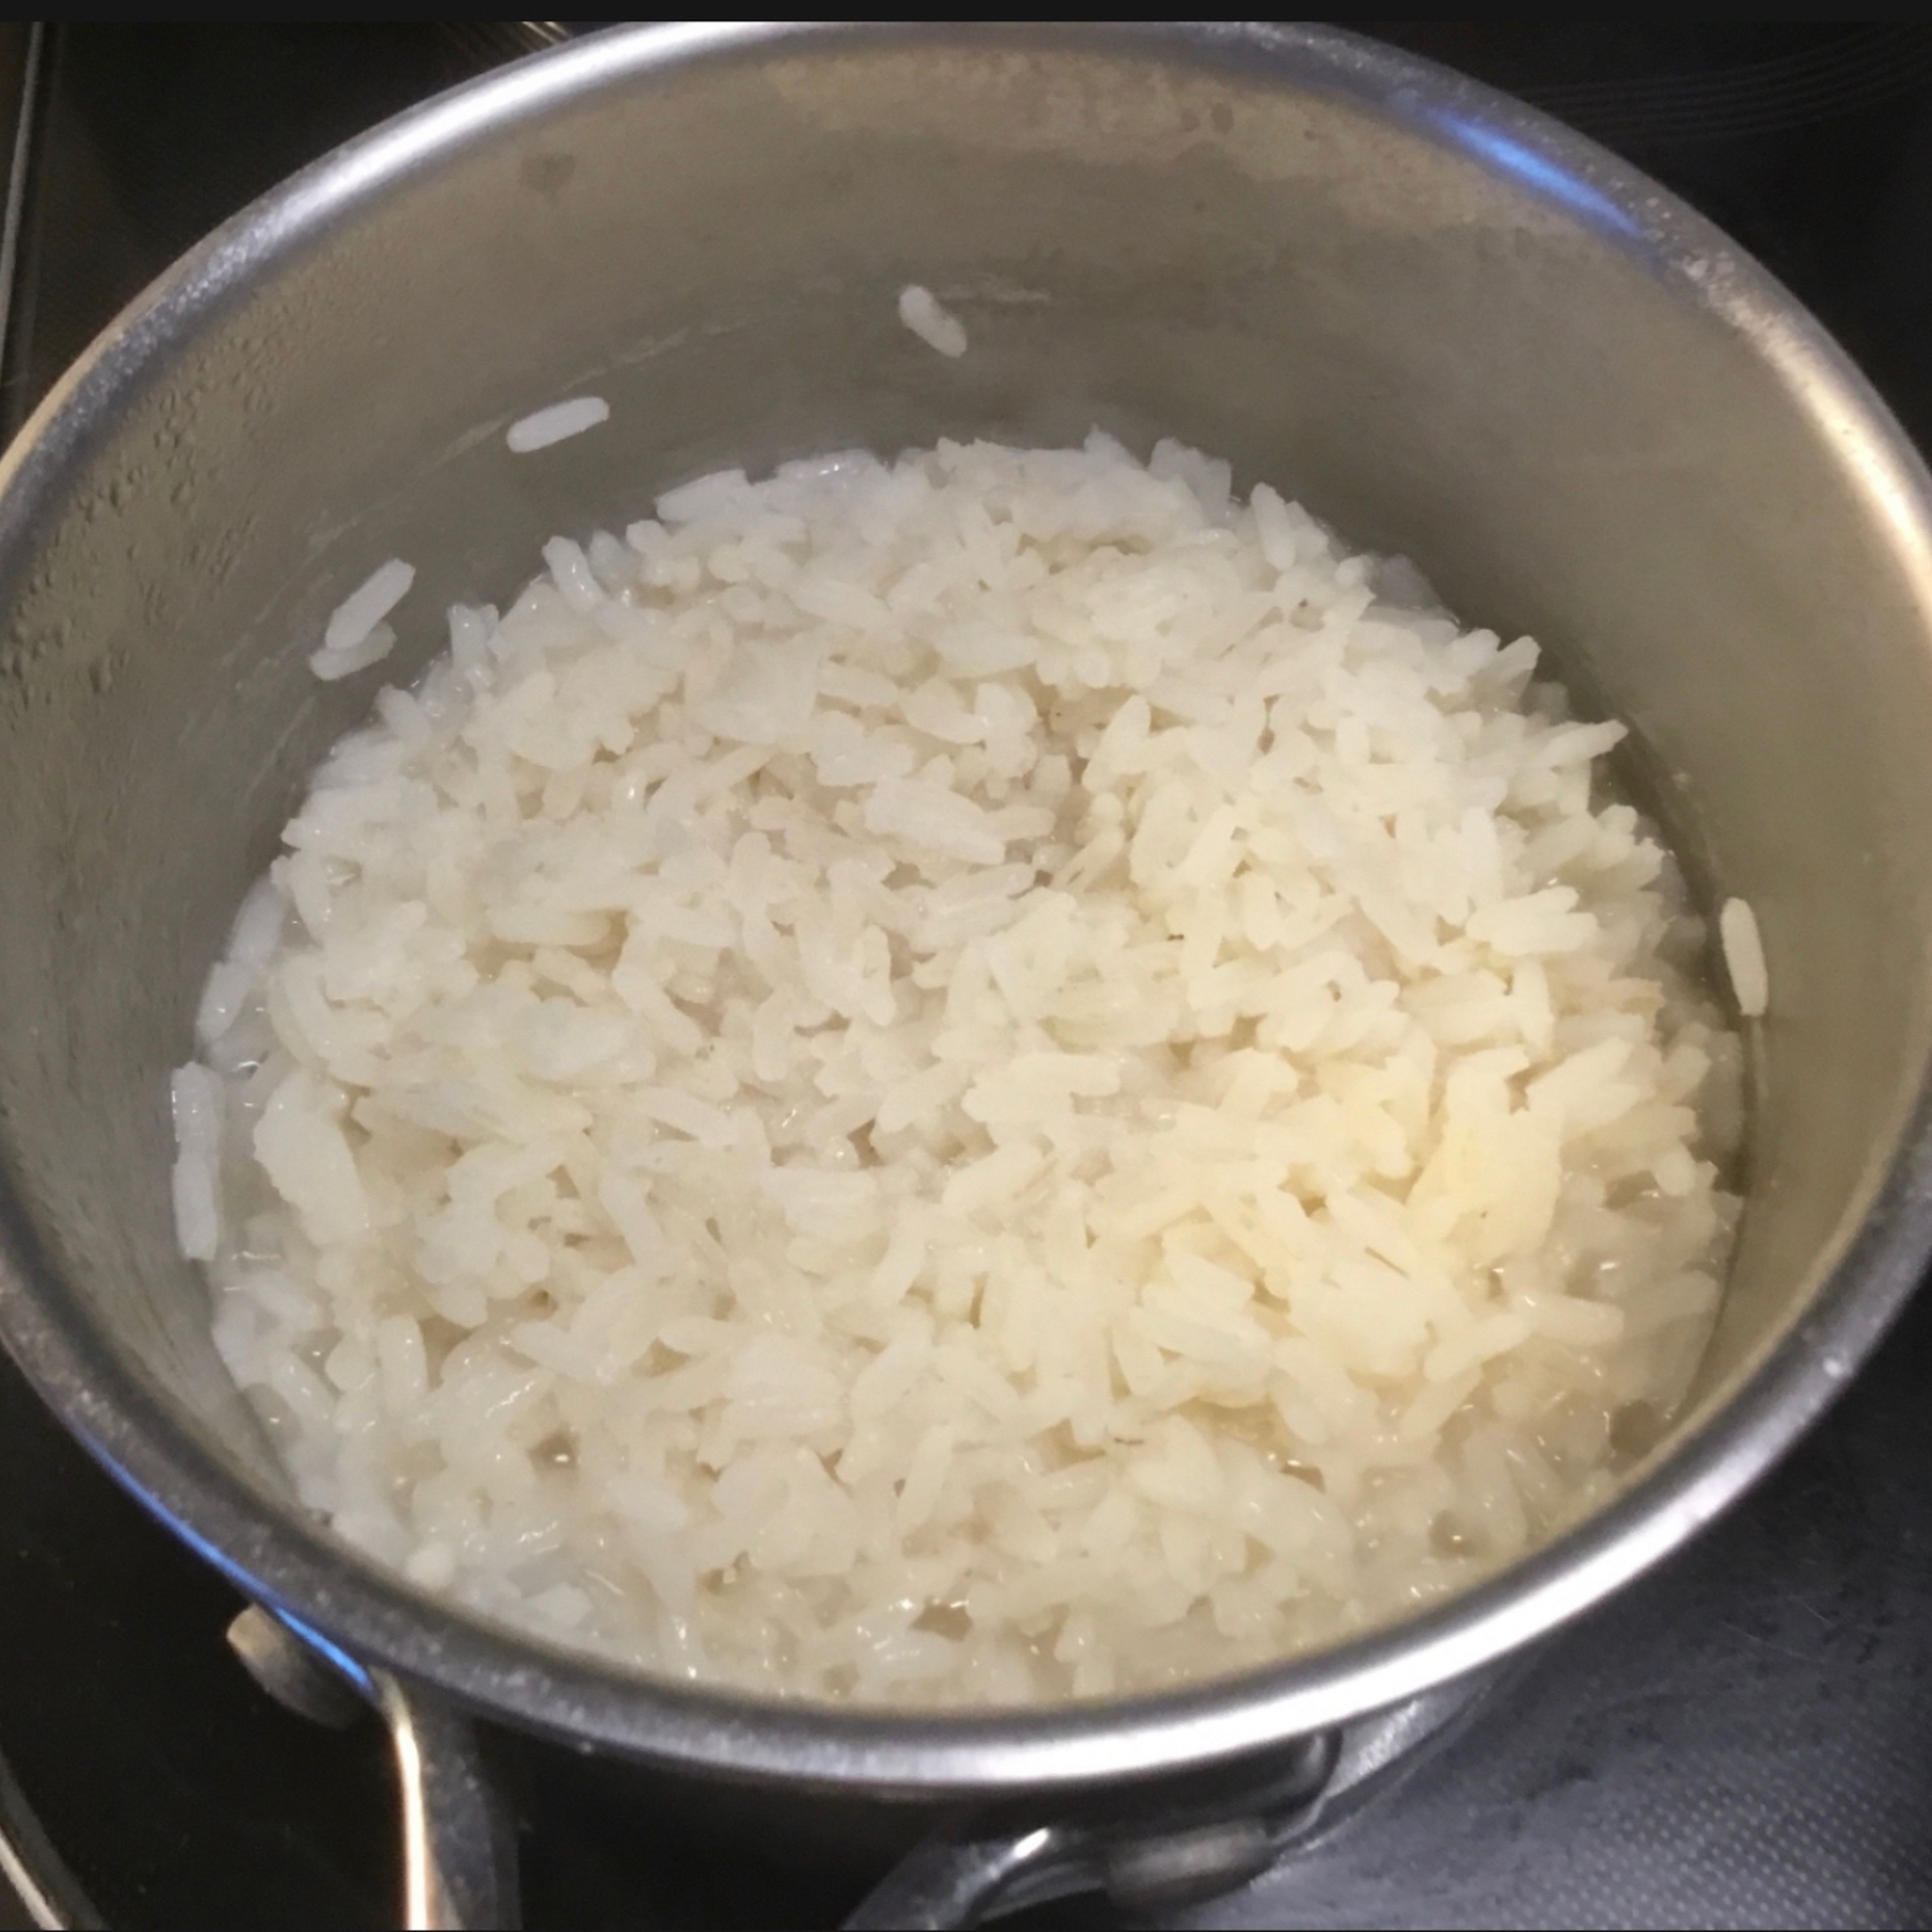 Den (ParaBoild)Reis wie immer mit etwas Salzwasser aufstellen und köcheln. Ich füge immer wieder Wasser hinzu bis der Reis fertig ist. Wer ihn lieber klebrig mag, gibt nen Deckel drauf. Wer ihn wie ich körnig mag bei offenem Topf köcheln, so dass Wasser verdampfen kann